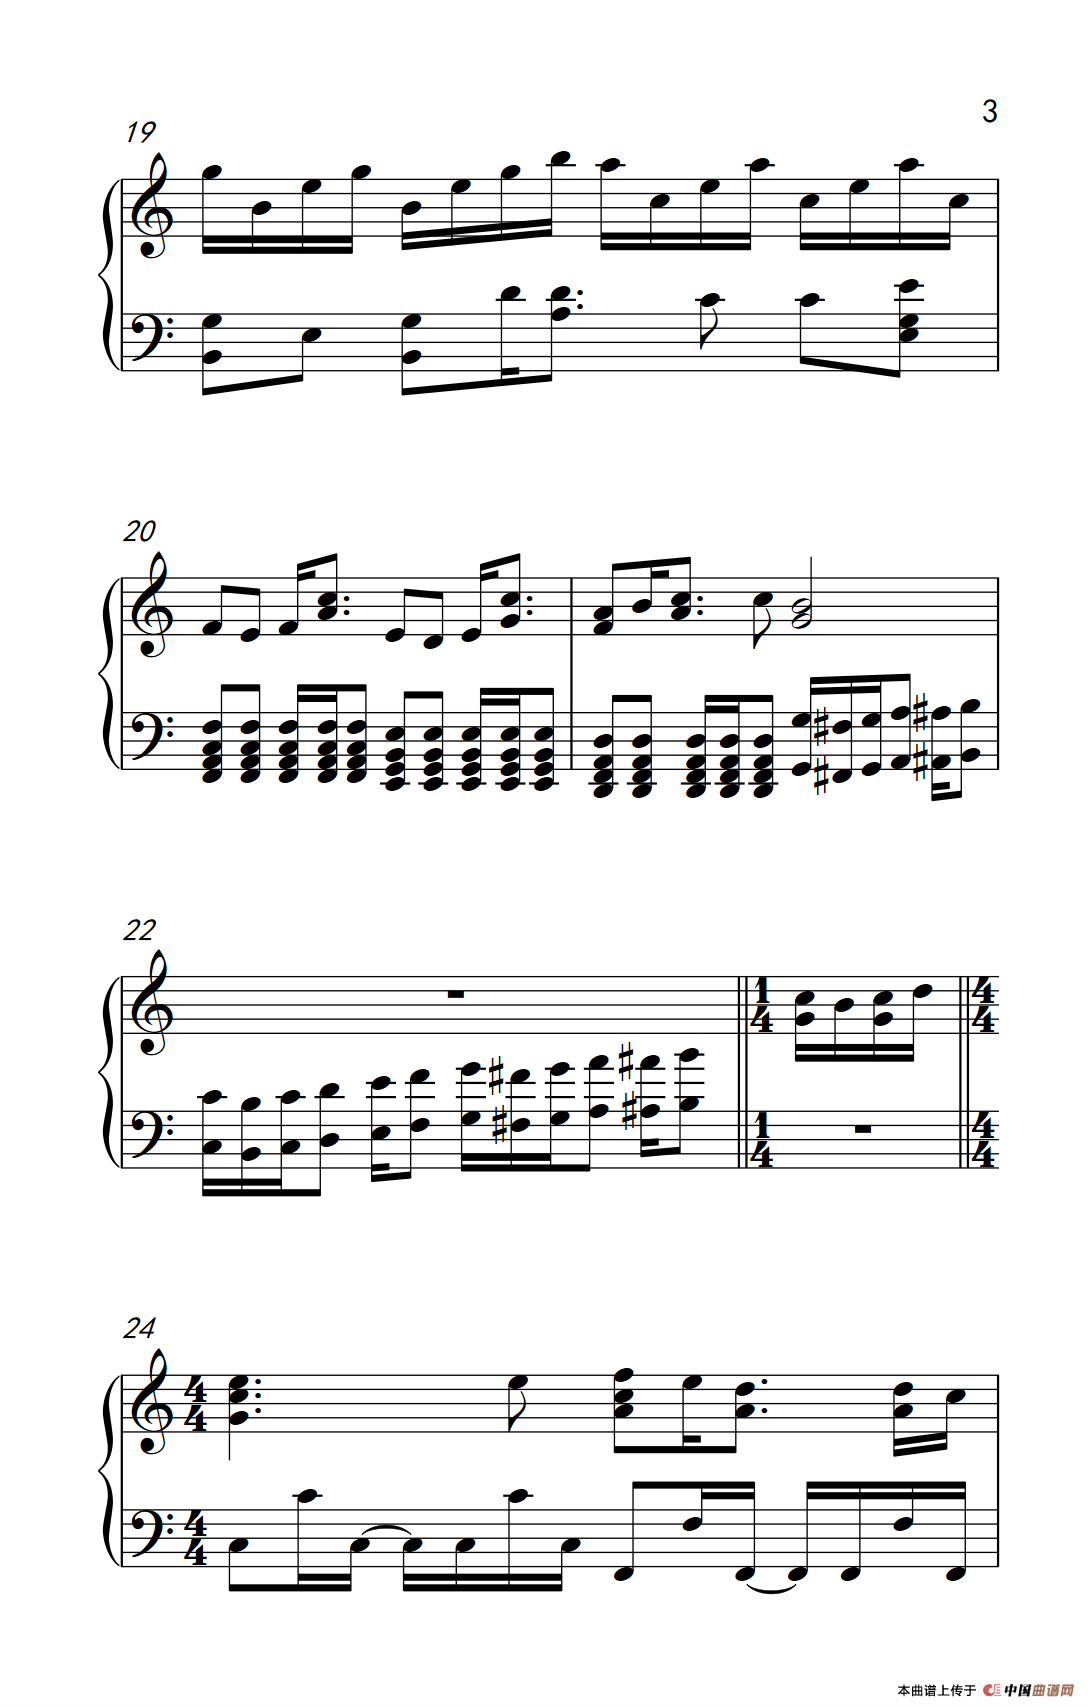 《少年说》钢琴曲谱图分享